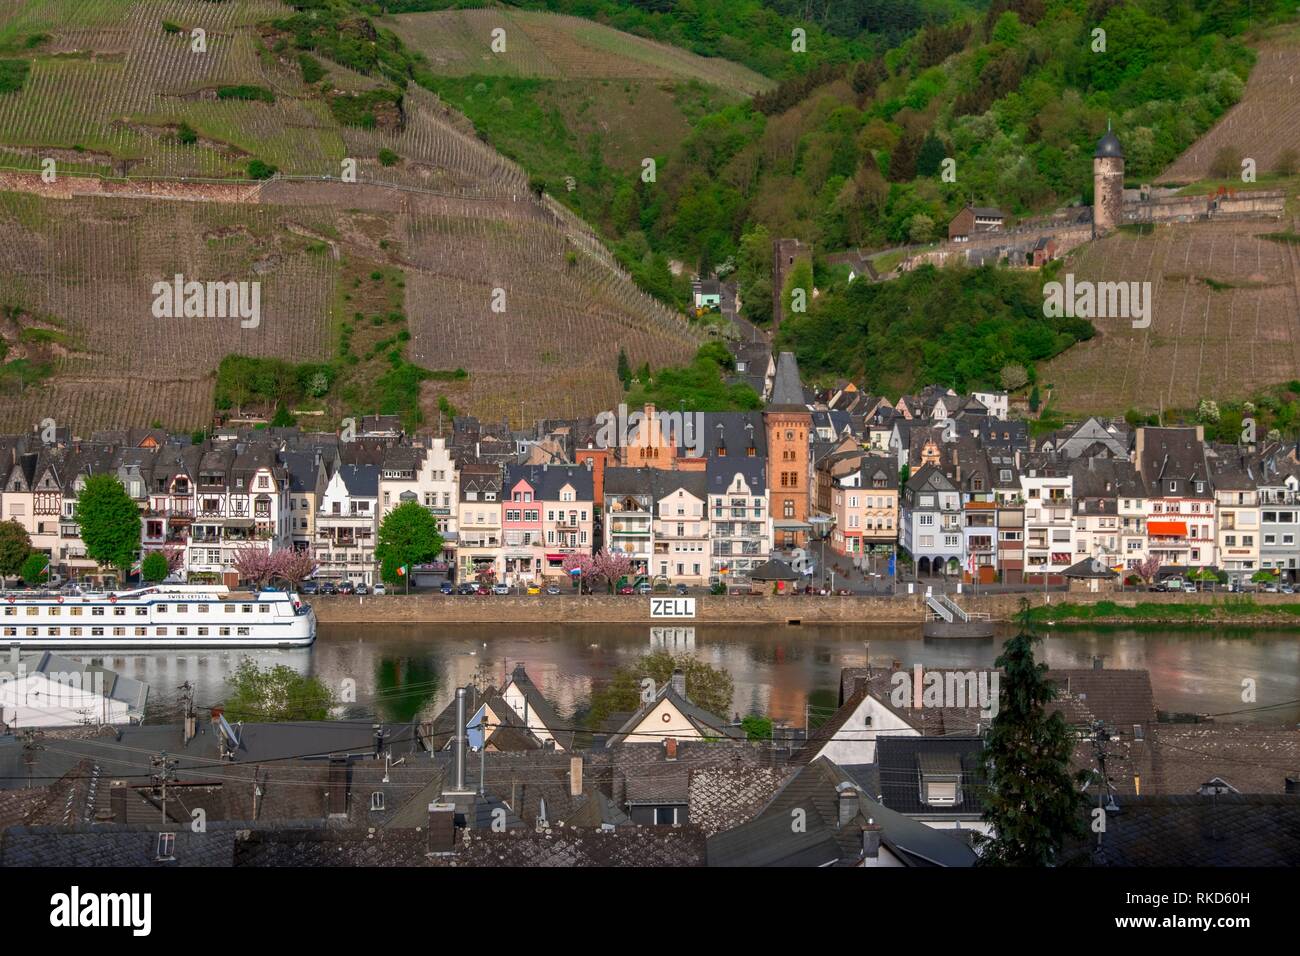 Germania, della Mosella, Bernkastel Kues. La Mosella è un fiume che scorre attraverso la Francia, il Lussemburgo e la Germania. È un affluente di sinistra del Reno, che Foto Stock